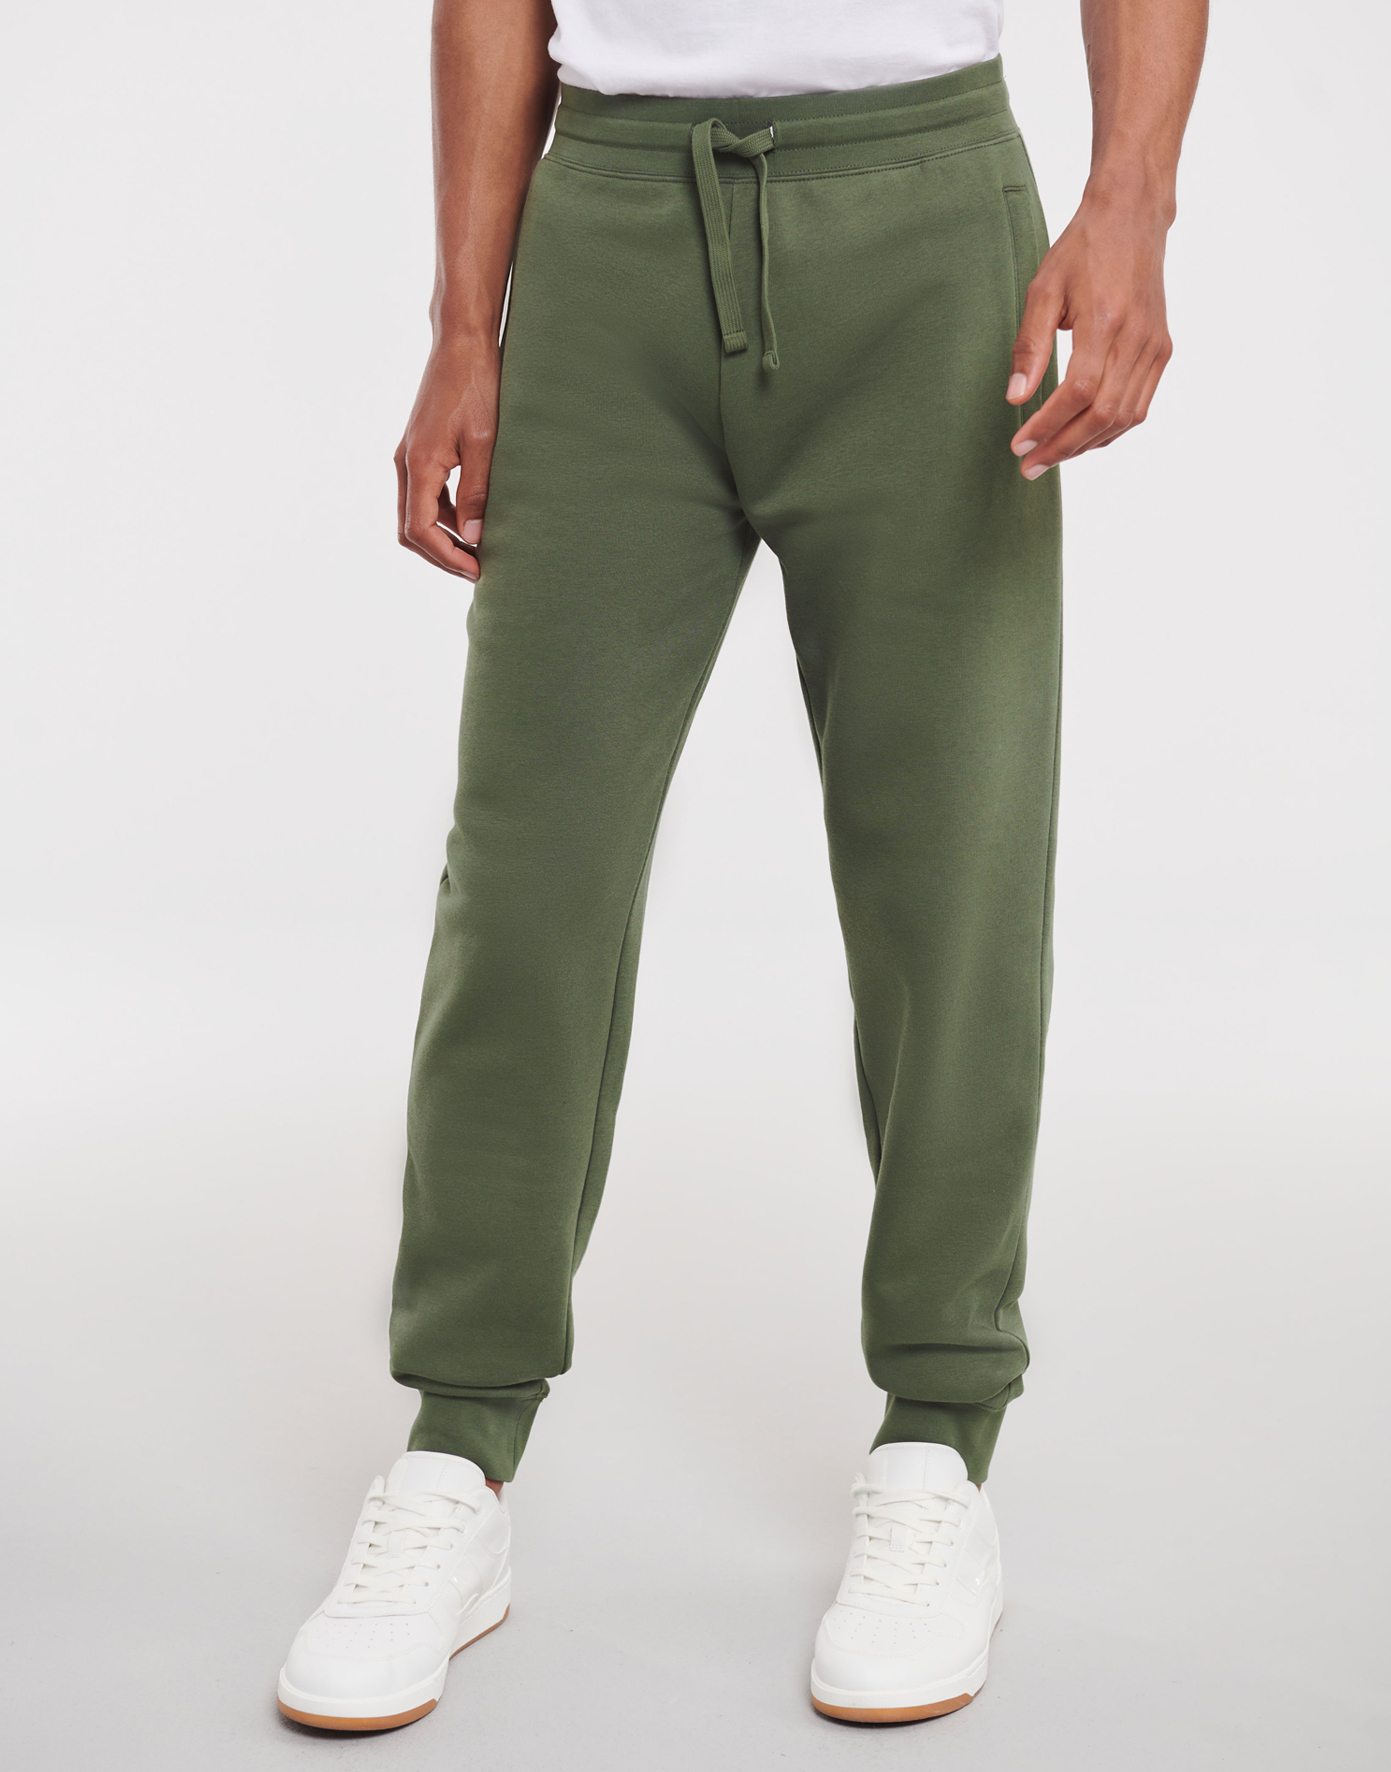 Pánské joggingové kalhoty Velikost: S, Barva: Zelená